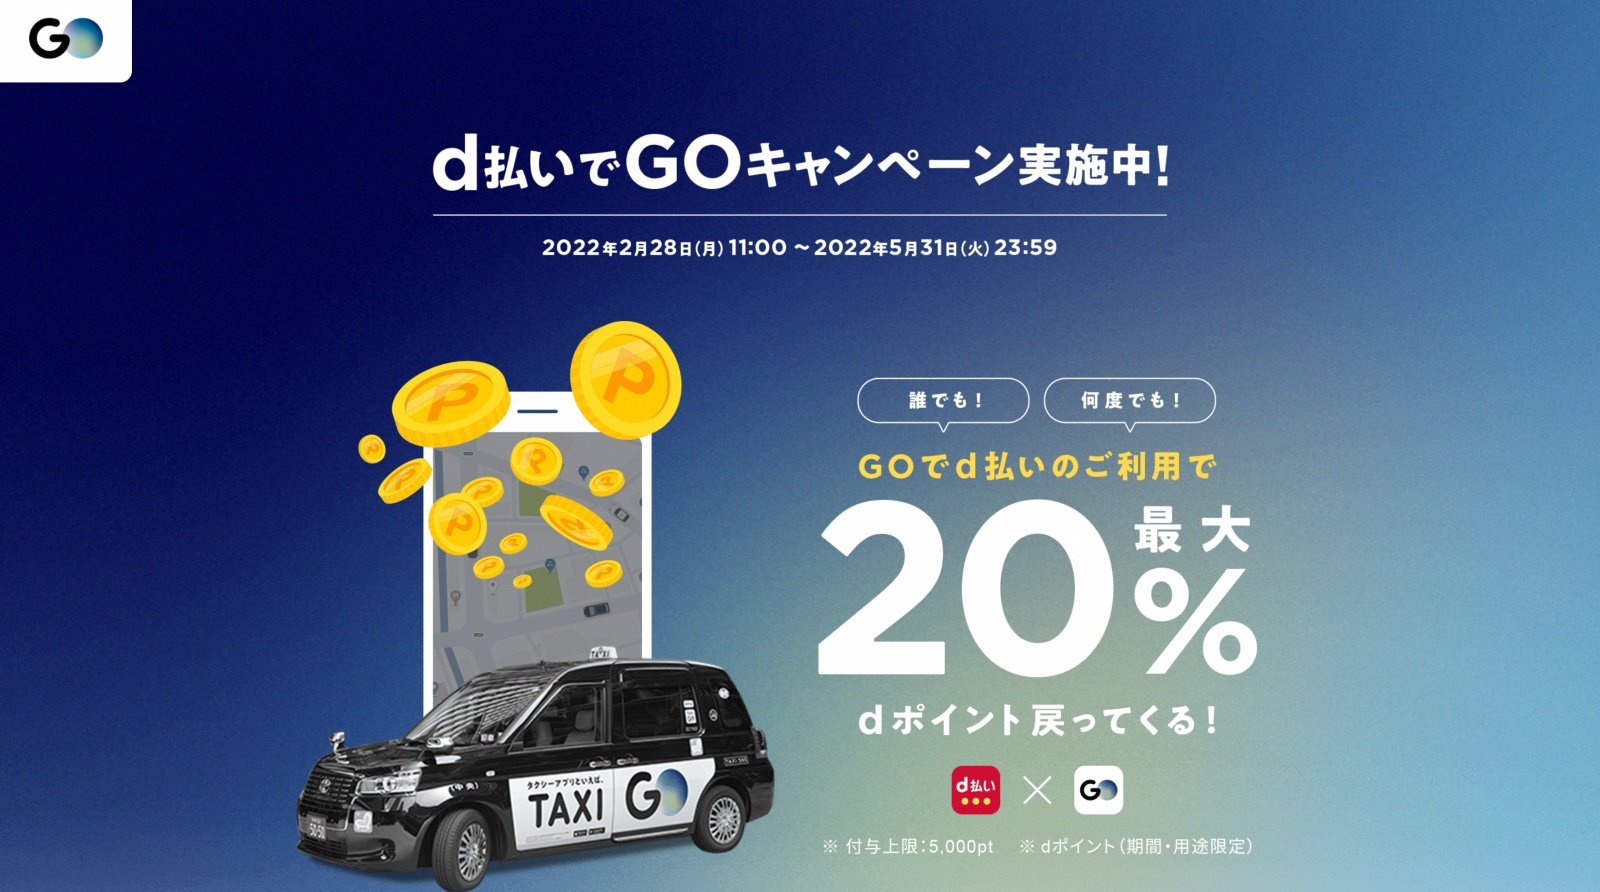 タクシーアプリ Go でのd払い決済で 還元 5月31日まで Itmedia Mobile